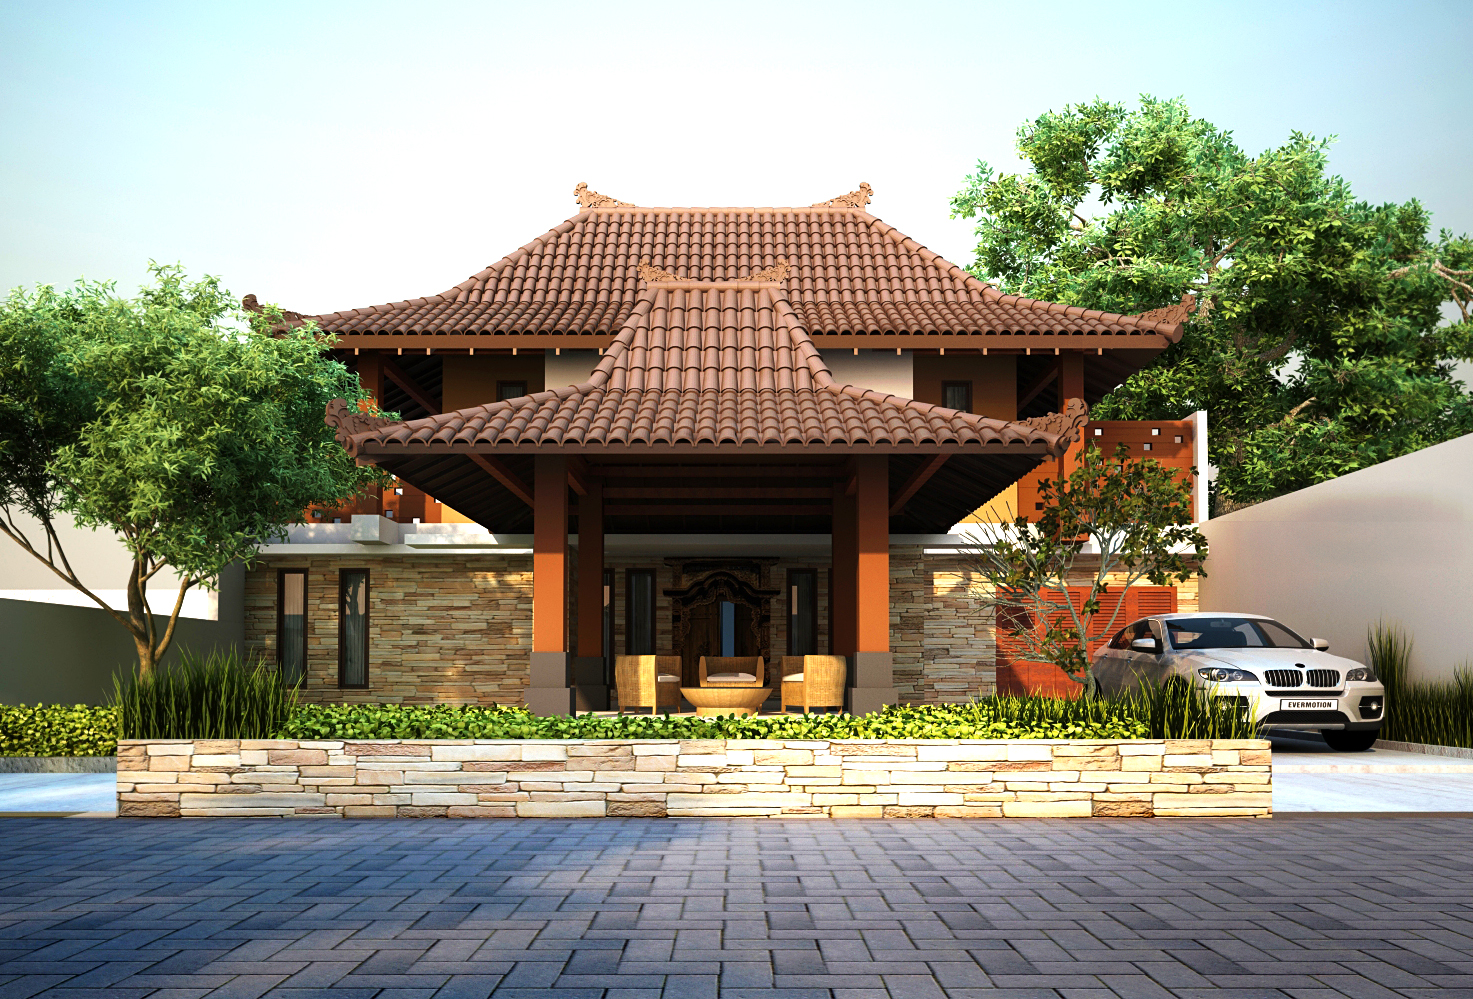 102 Desain Rumah Minimalis Modern Jawa Gambar Desain Rumah Minimalis